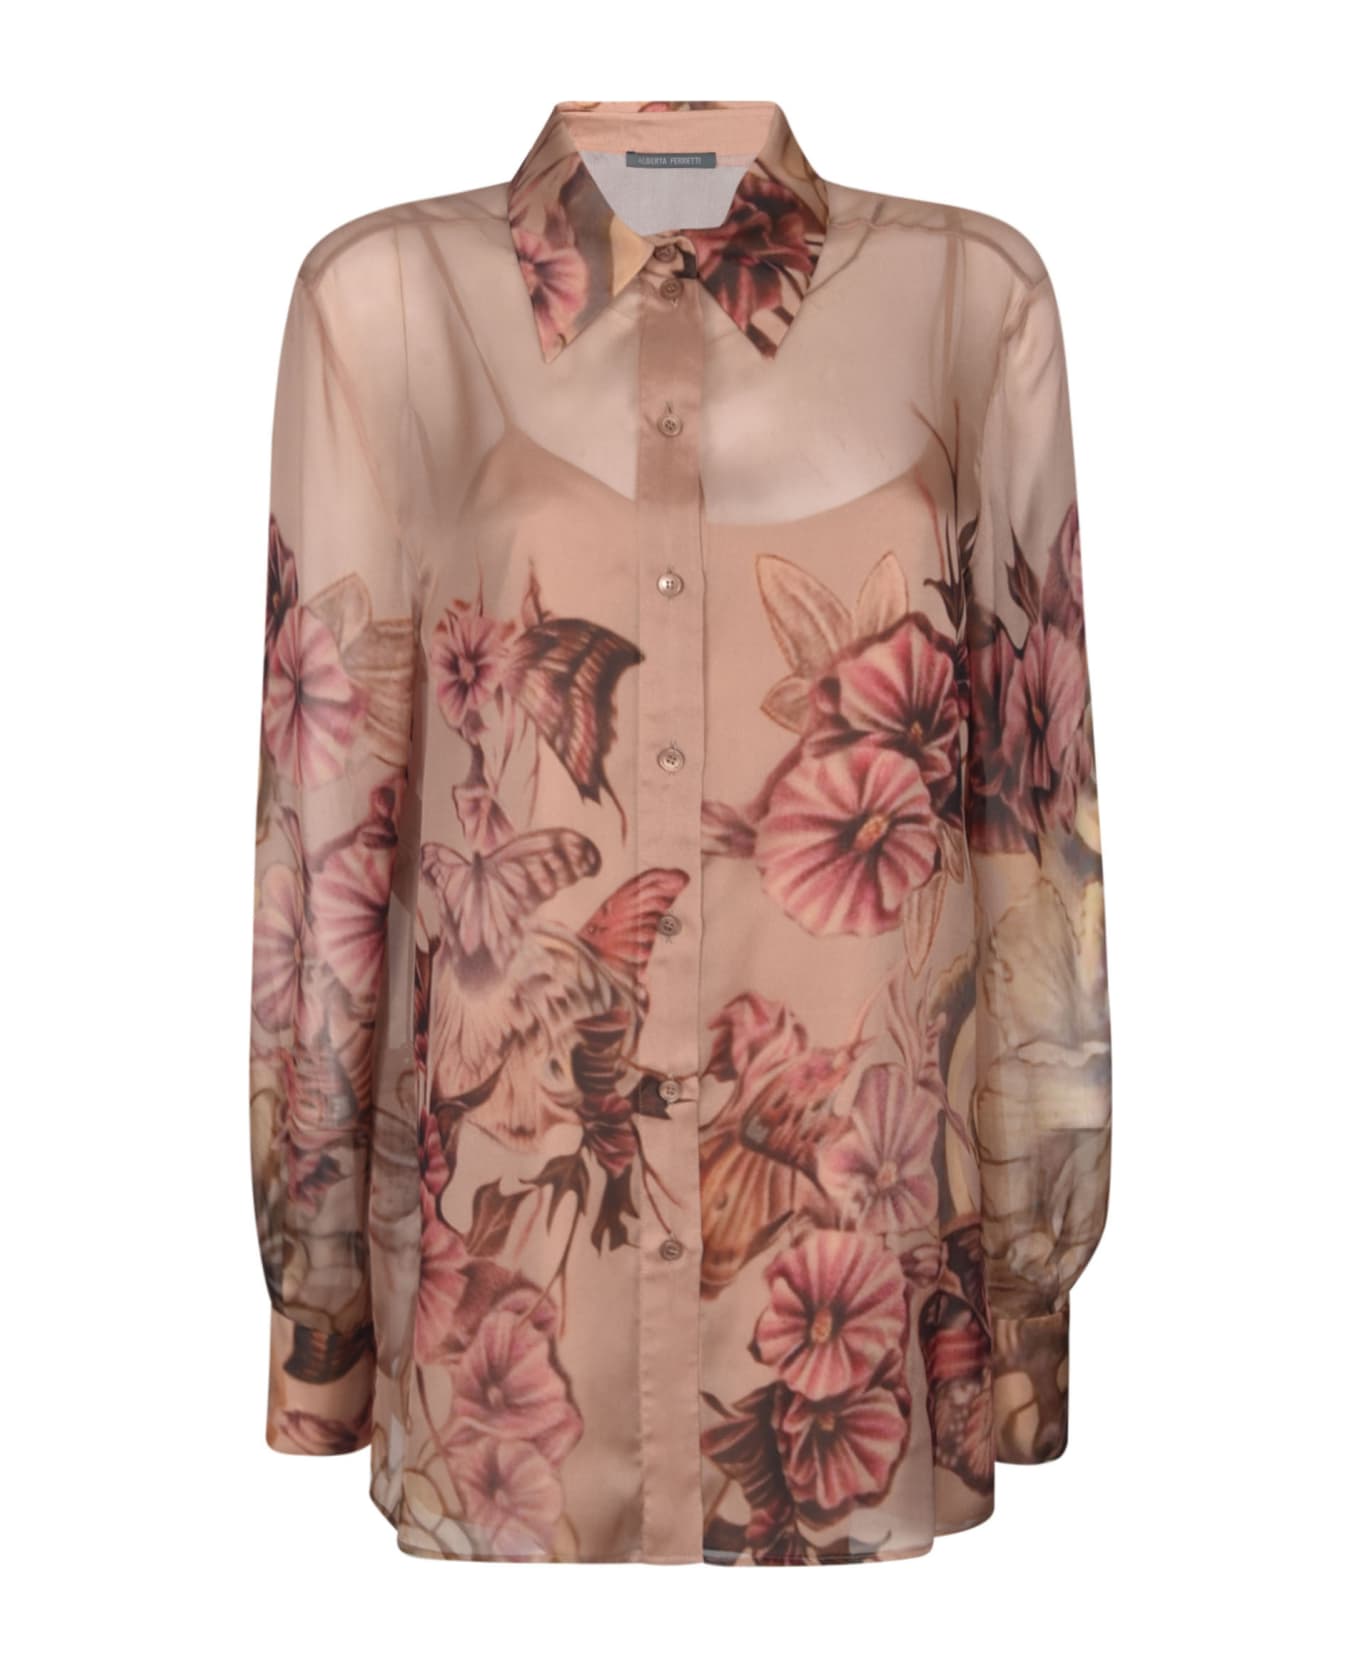 Alberta Ferretti Floral Print Shirt - Pink/Brown